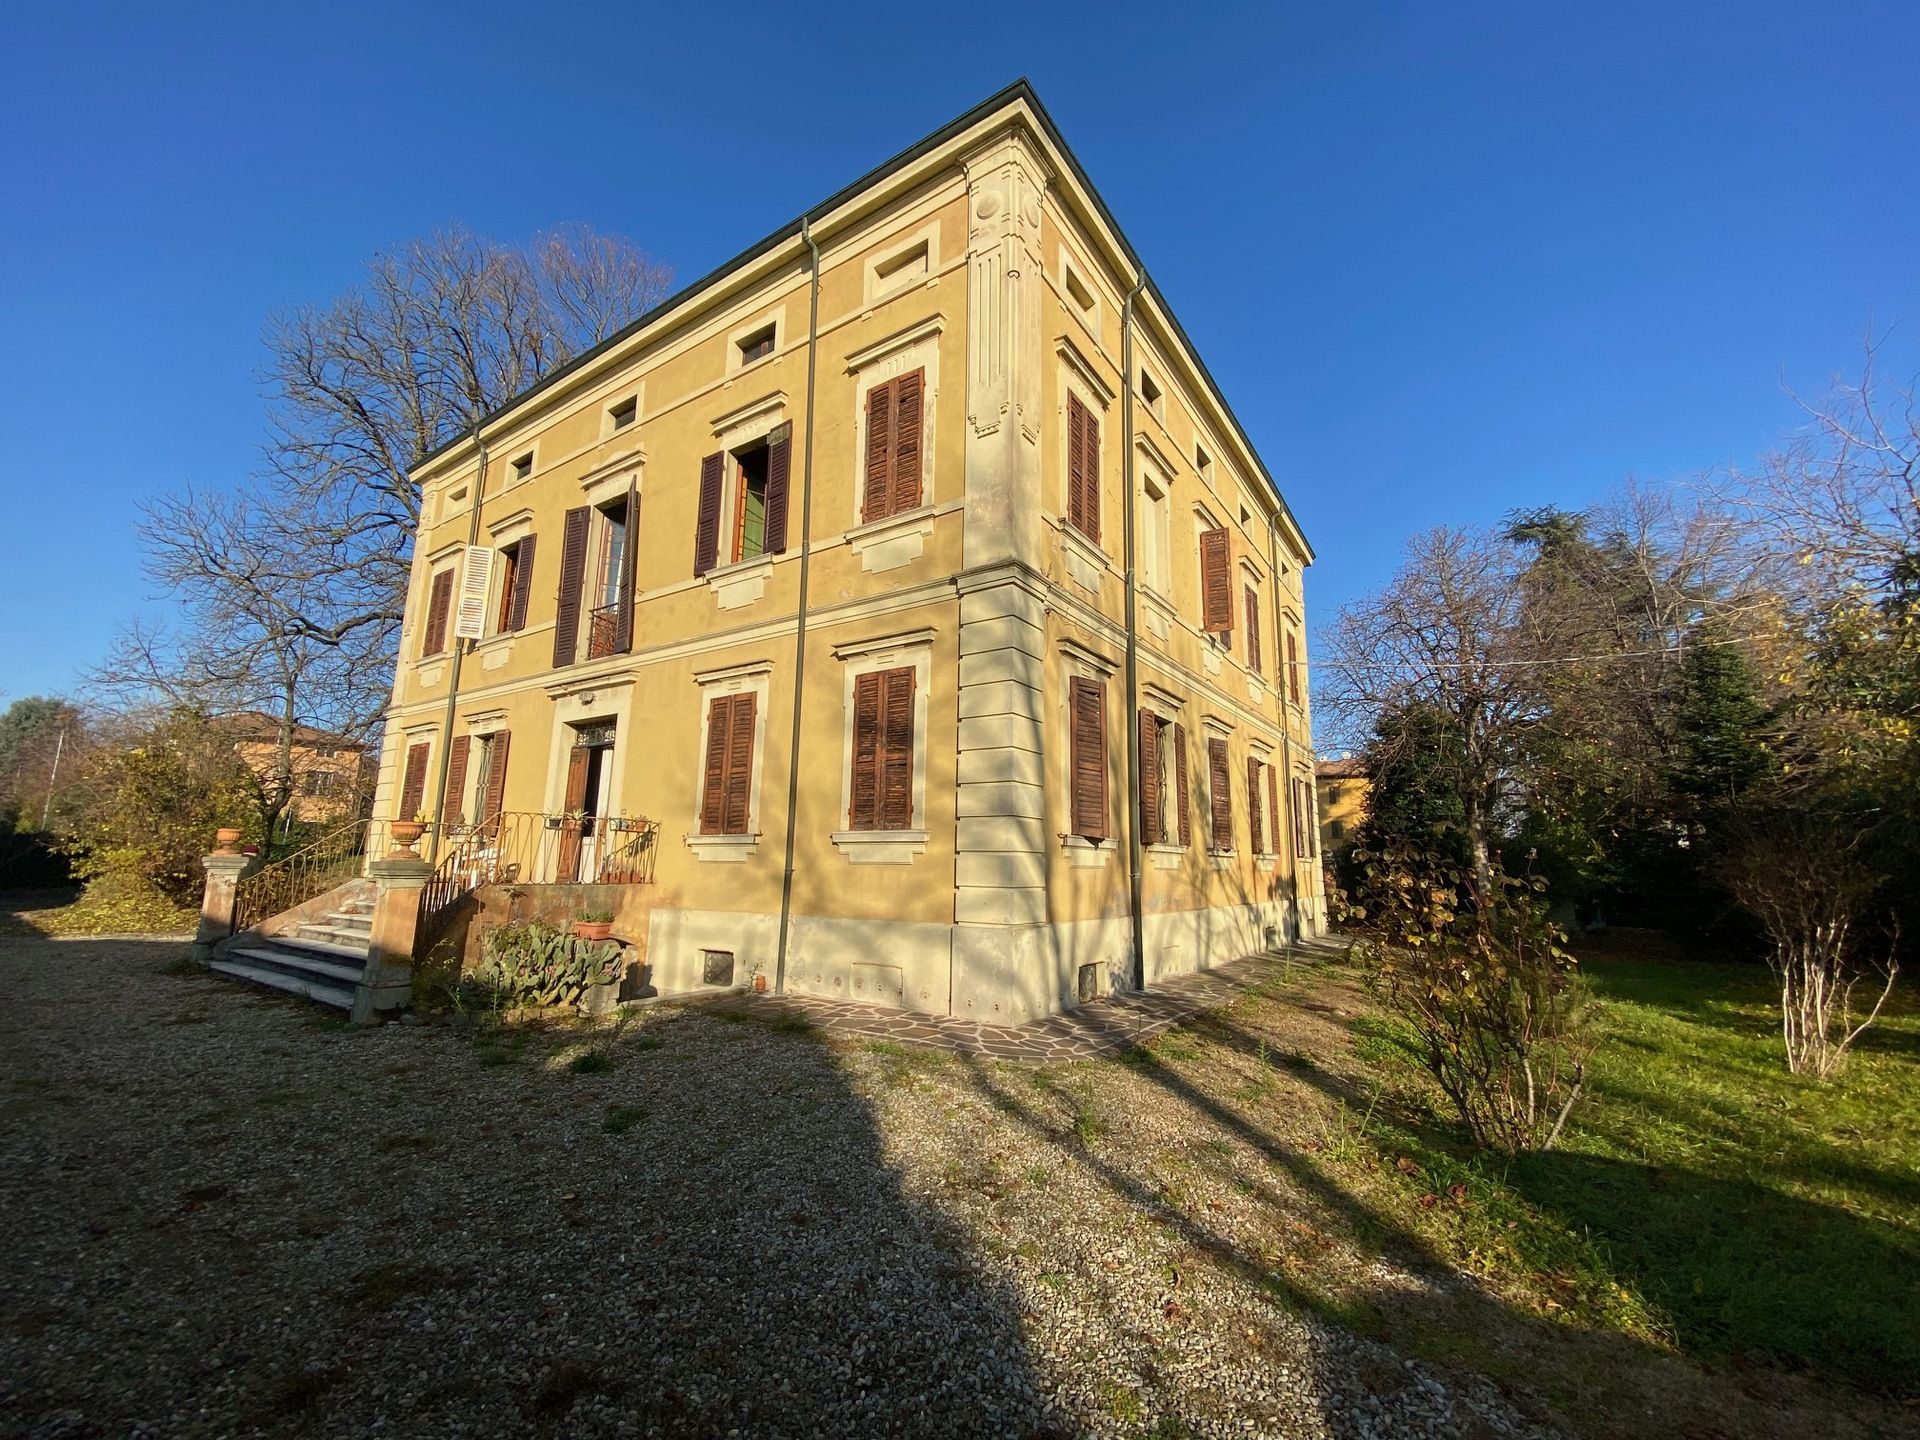 For sale villa in quiet zone Modena Emilia-Romagna